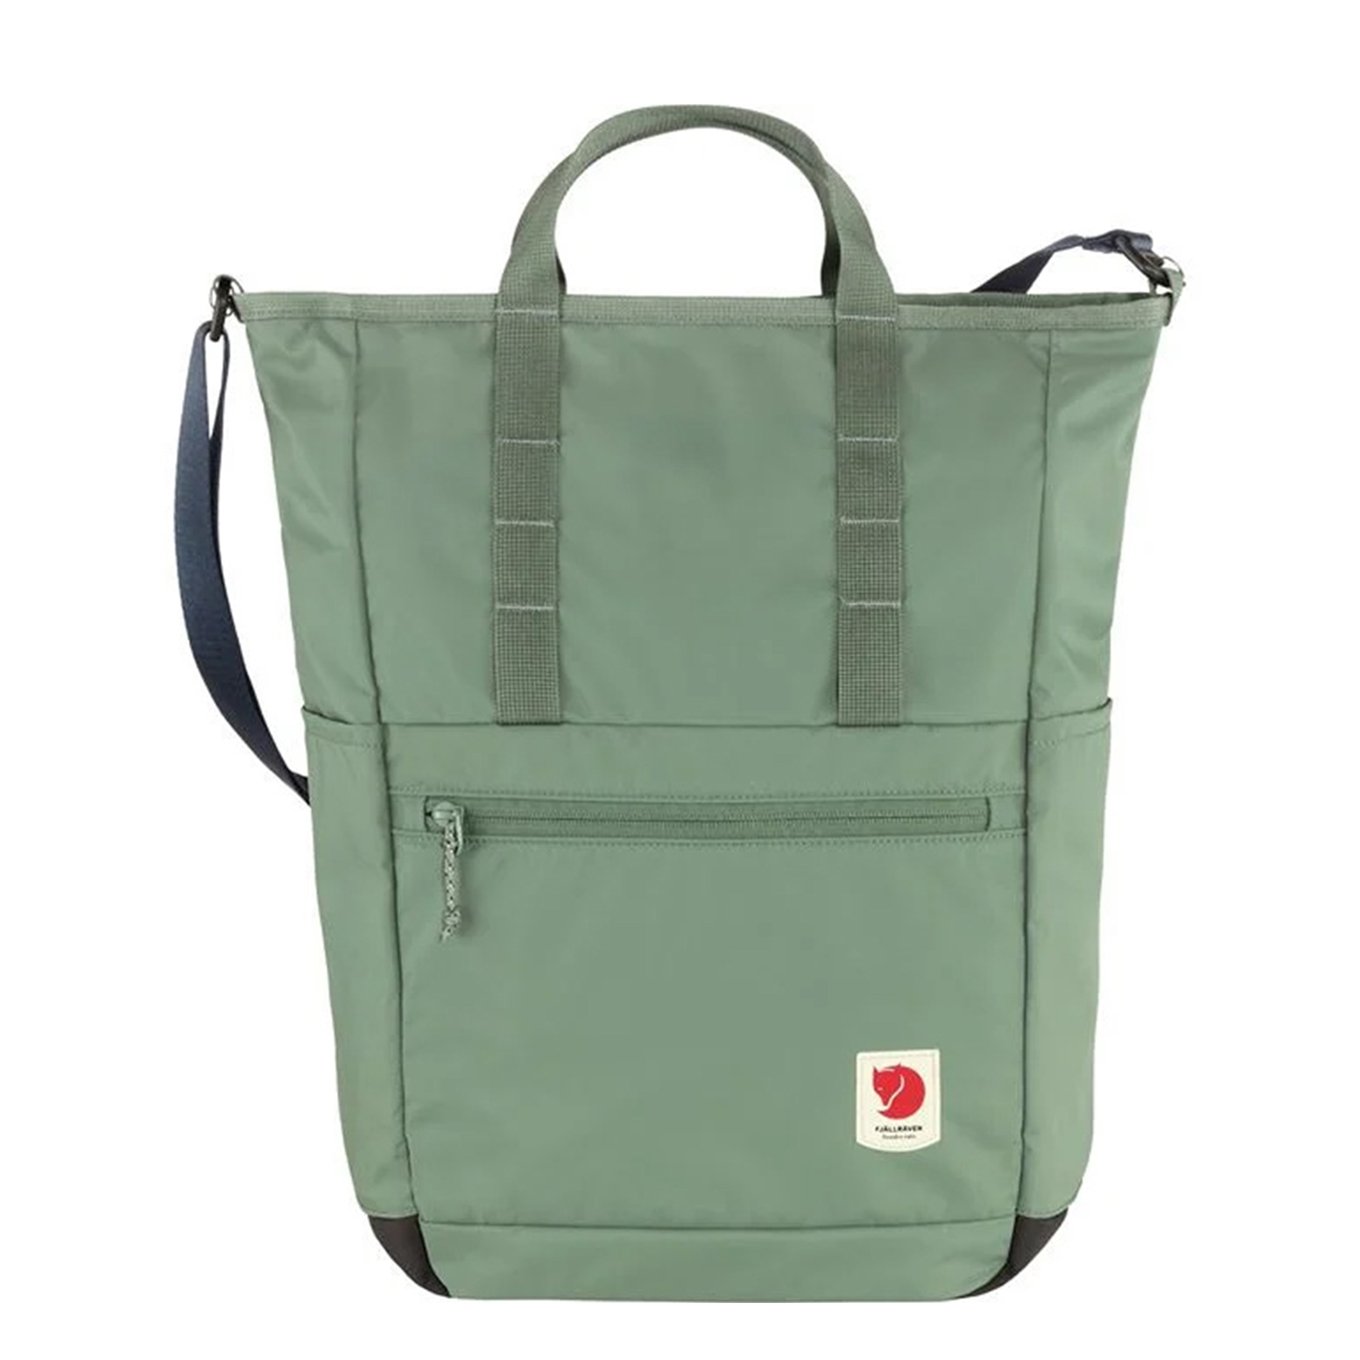 Fjallraven High Coast Totepack patina green backpack